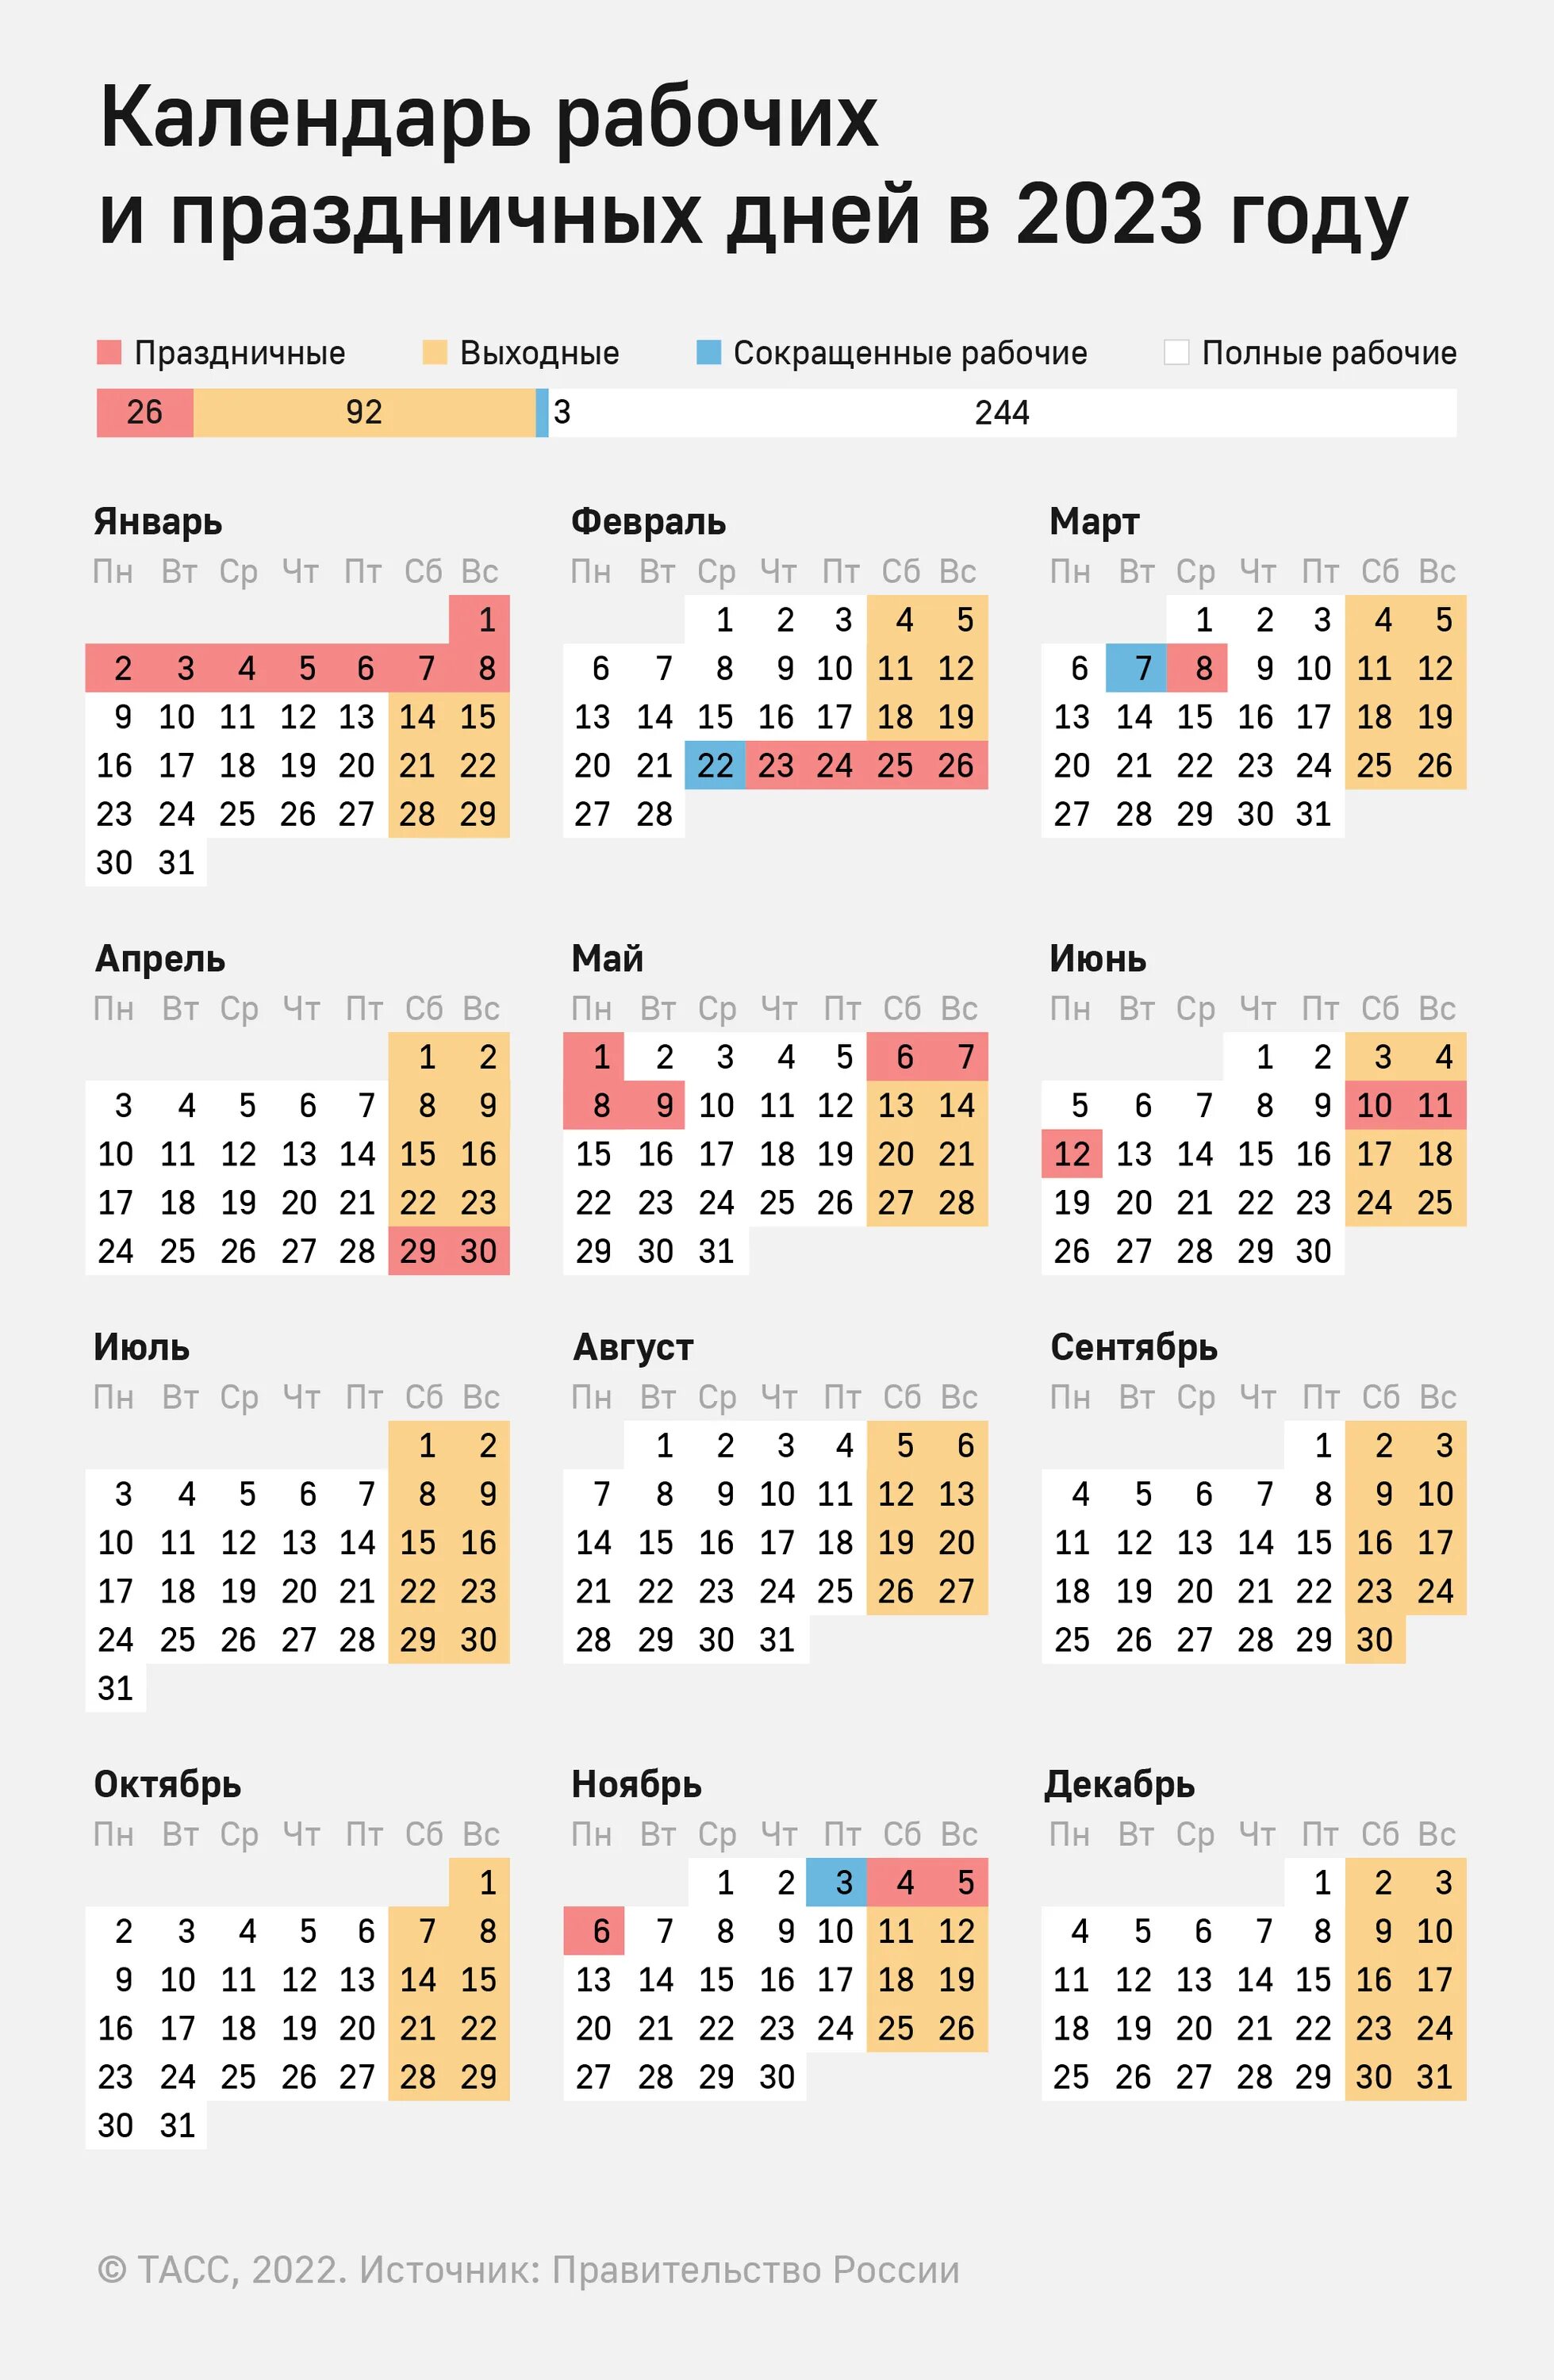 Выходные и праздничные дни в 2022 году производственный. Выходные и праздники 2022 года в России нерабочие дни. Праздничные дни 2022 календарь утвержденный. Производственный календарь РФ на 2022 год с праздниками и выходными.